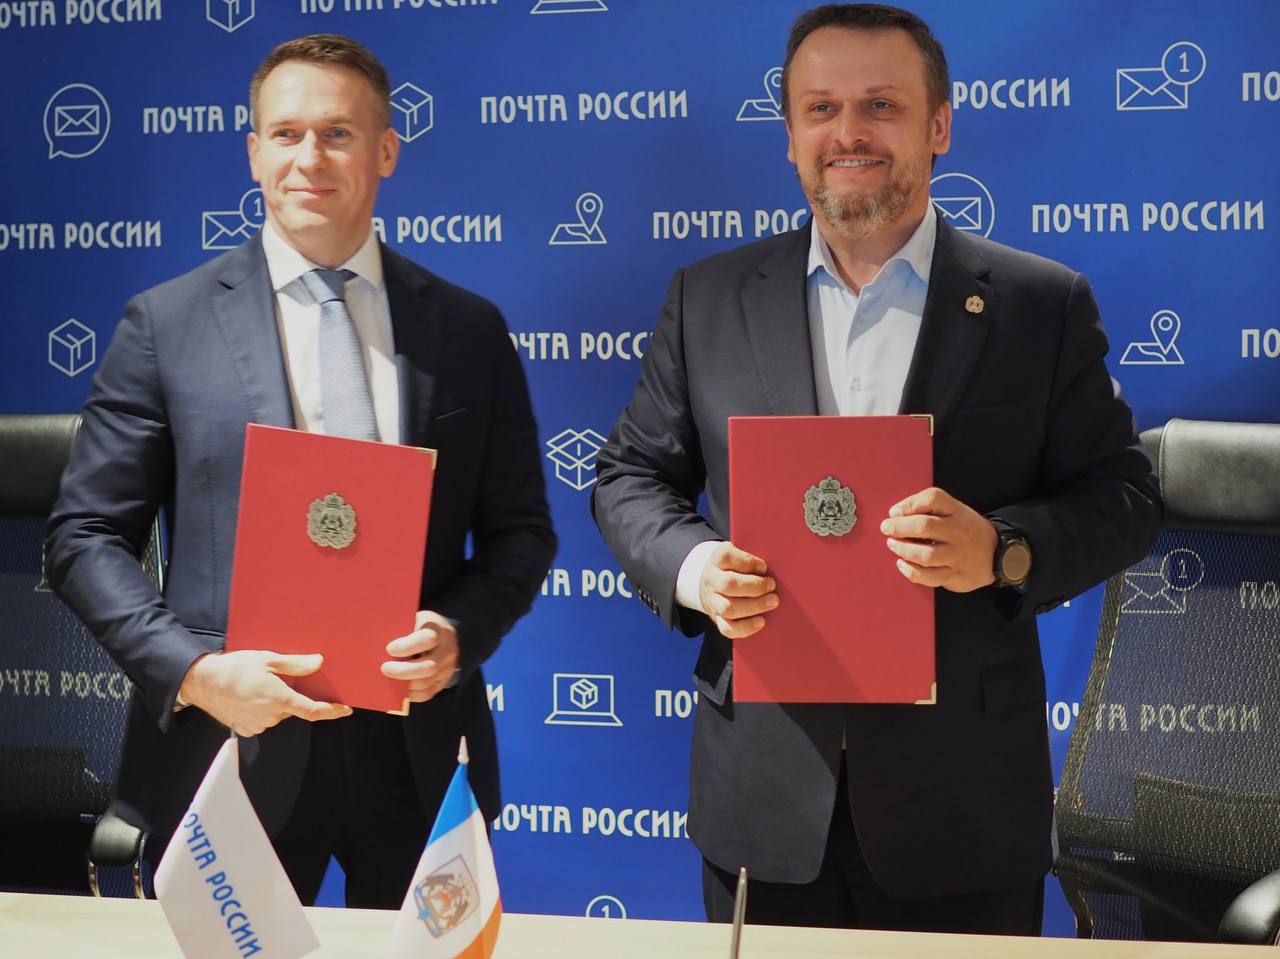 Новгородская область и Почта России подписали соглашение о развитии почтовых услуг в регионе.